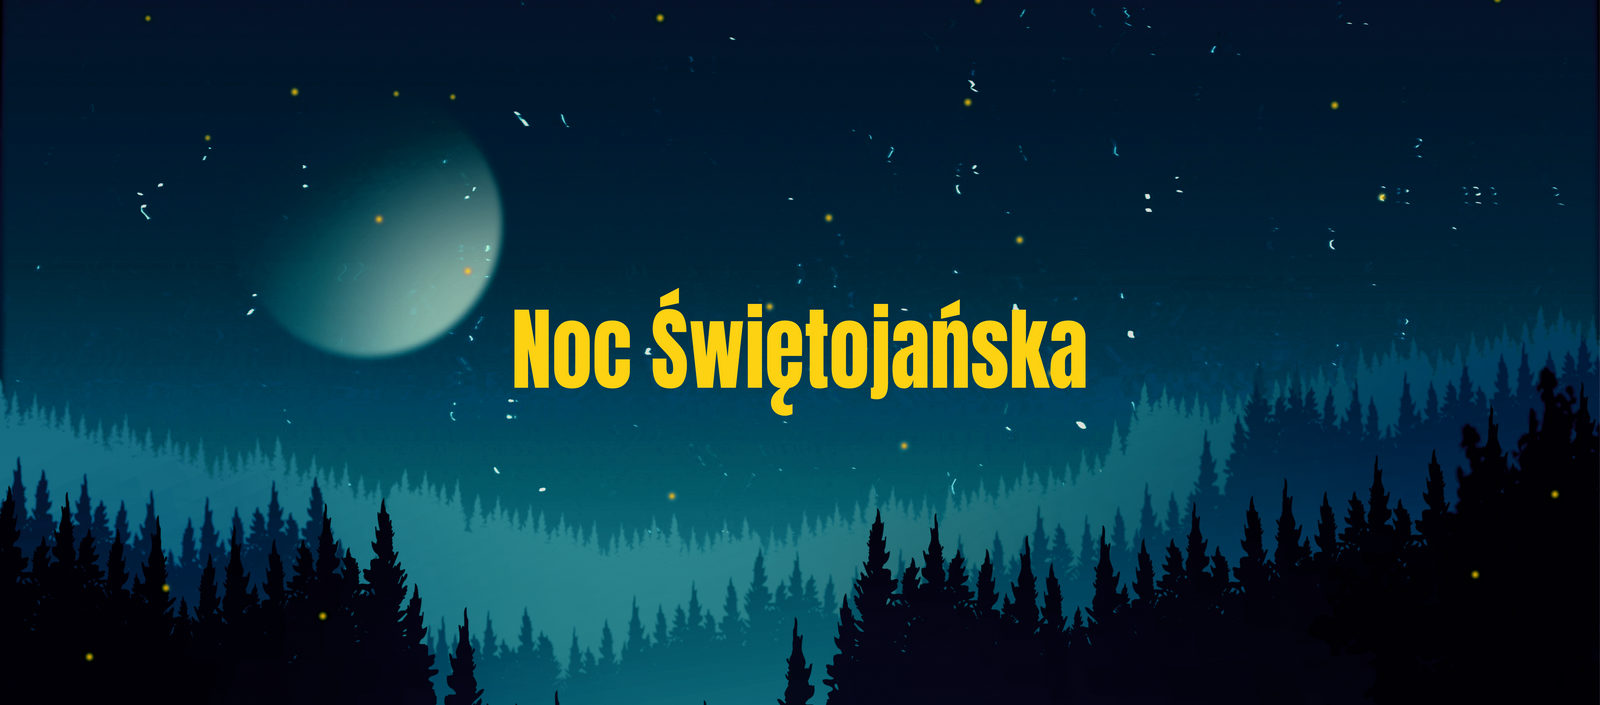  Noc Świętojańska - słowiańskie tradycje